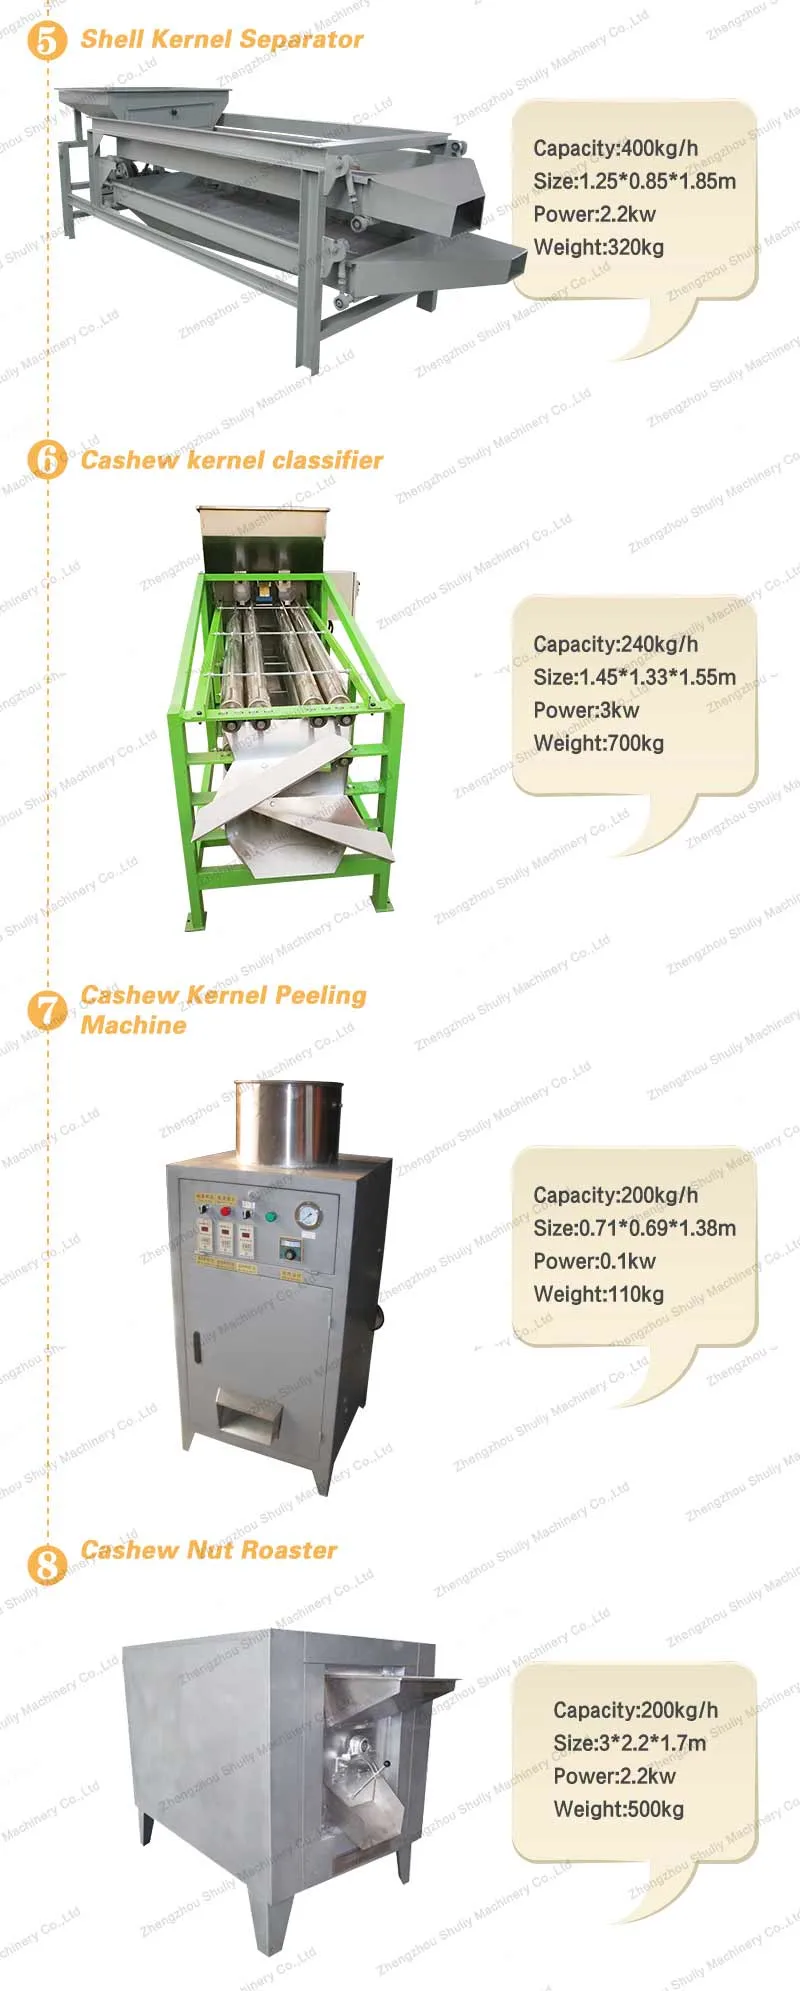 Automatic Cashew Nut Shelling Unit Cashew Nut Drying Peeling Machine